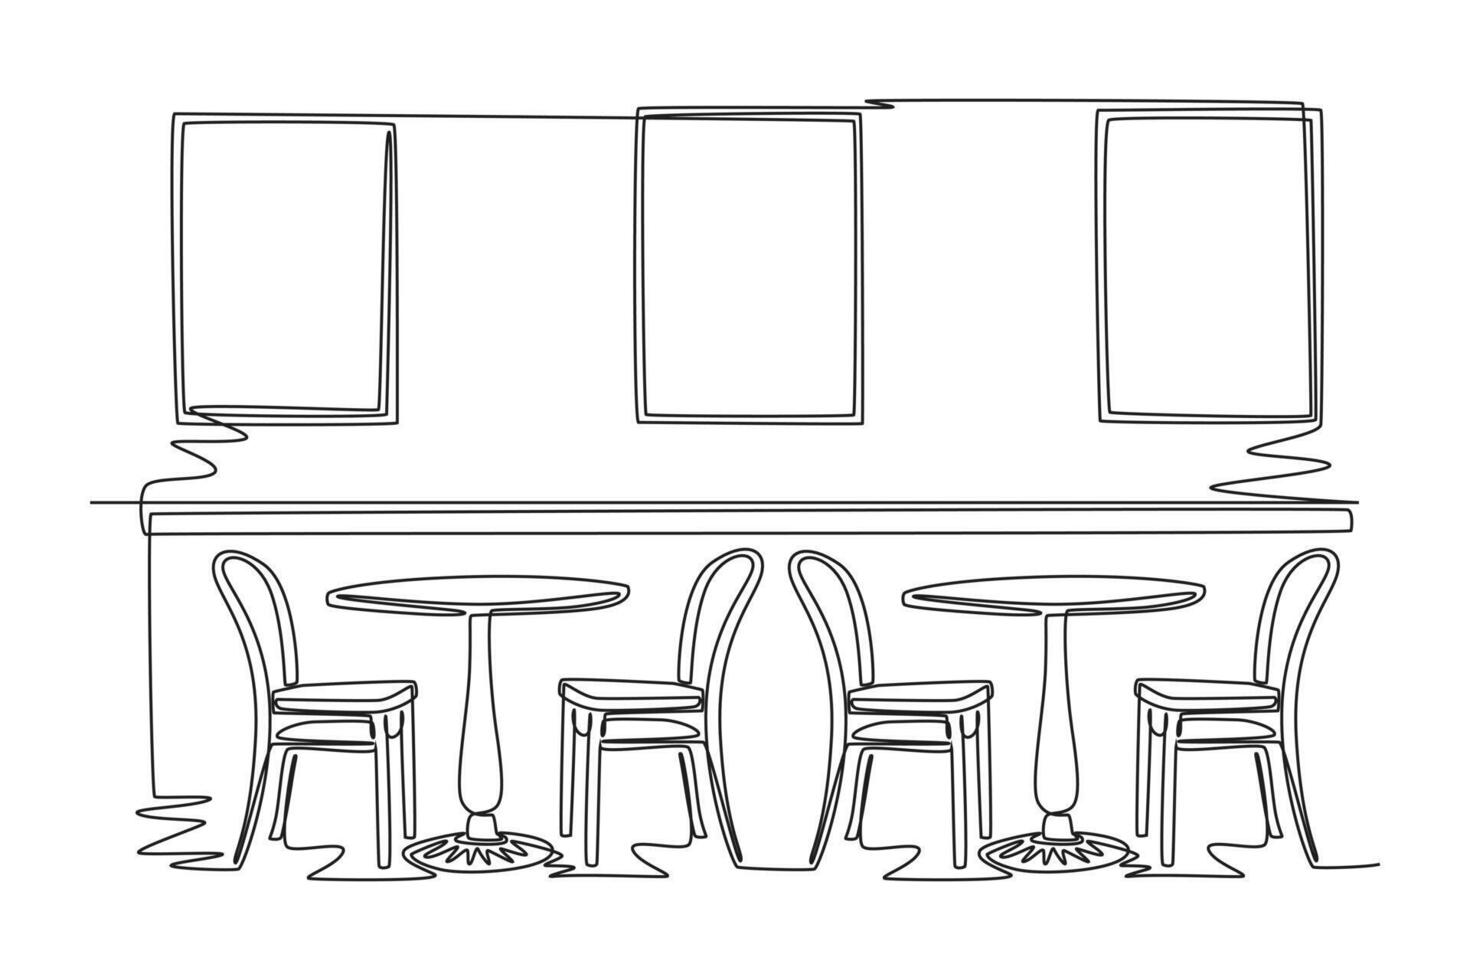 uno continuo linea disegno di caffè, caffè negozio o bar concetto. scarabocchio vettore illustrazione nel semplice lineare stile.